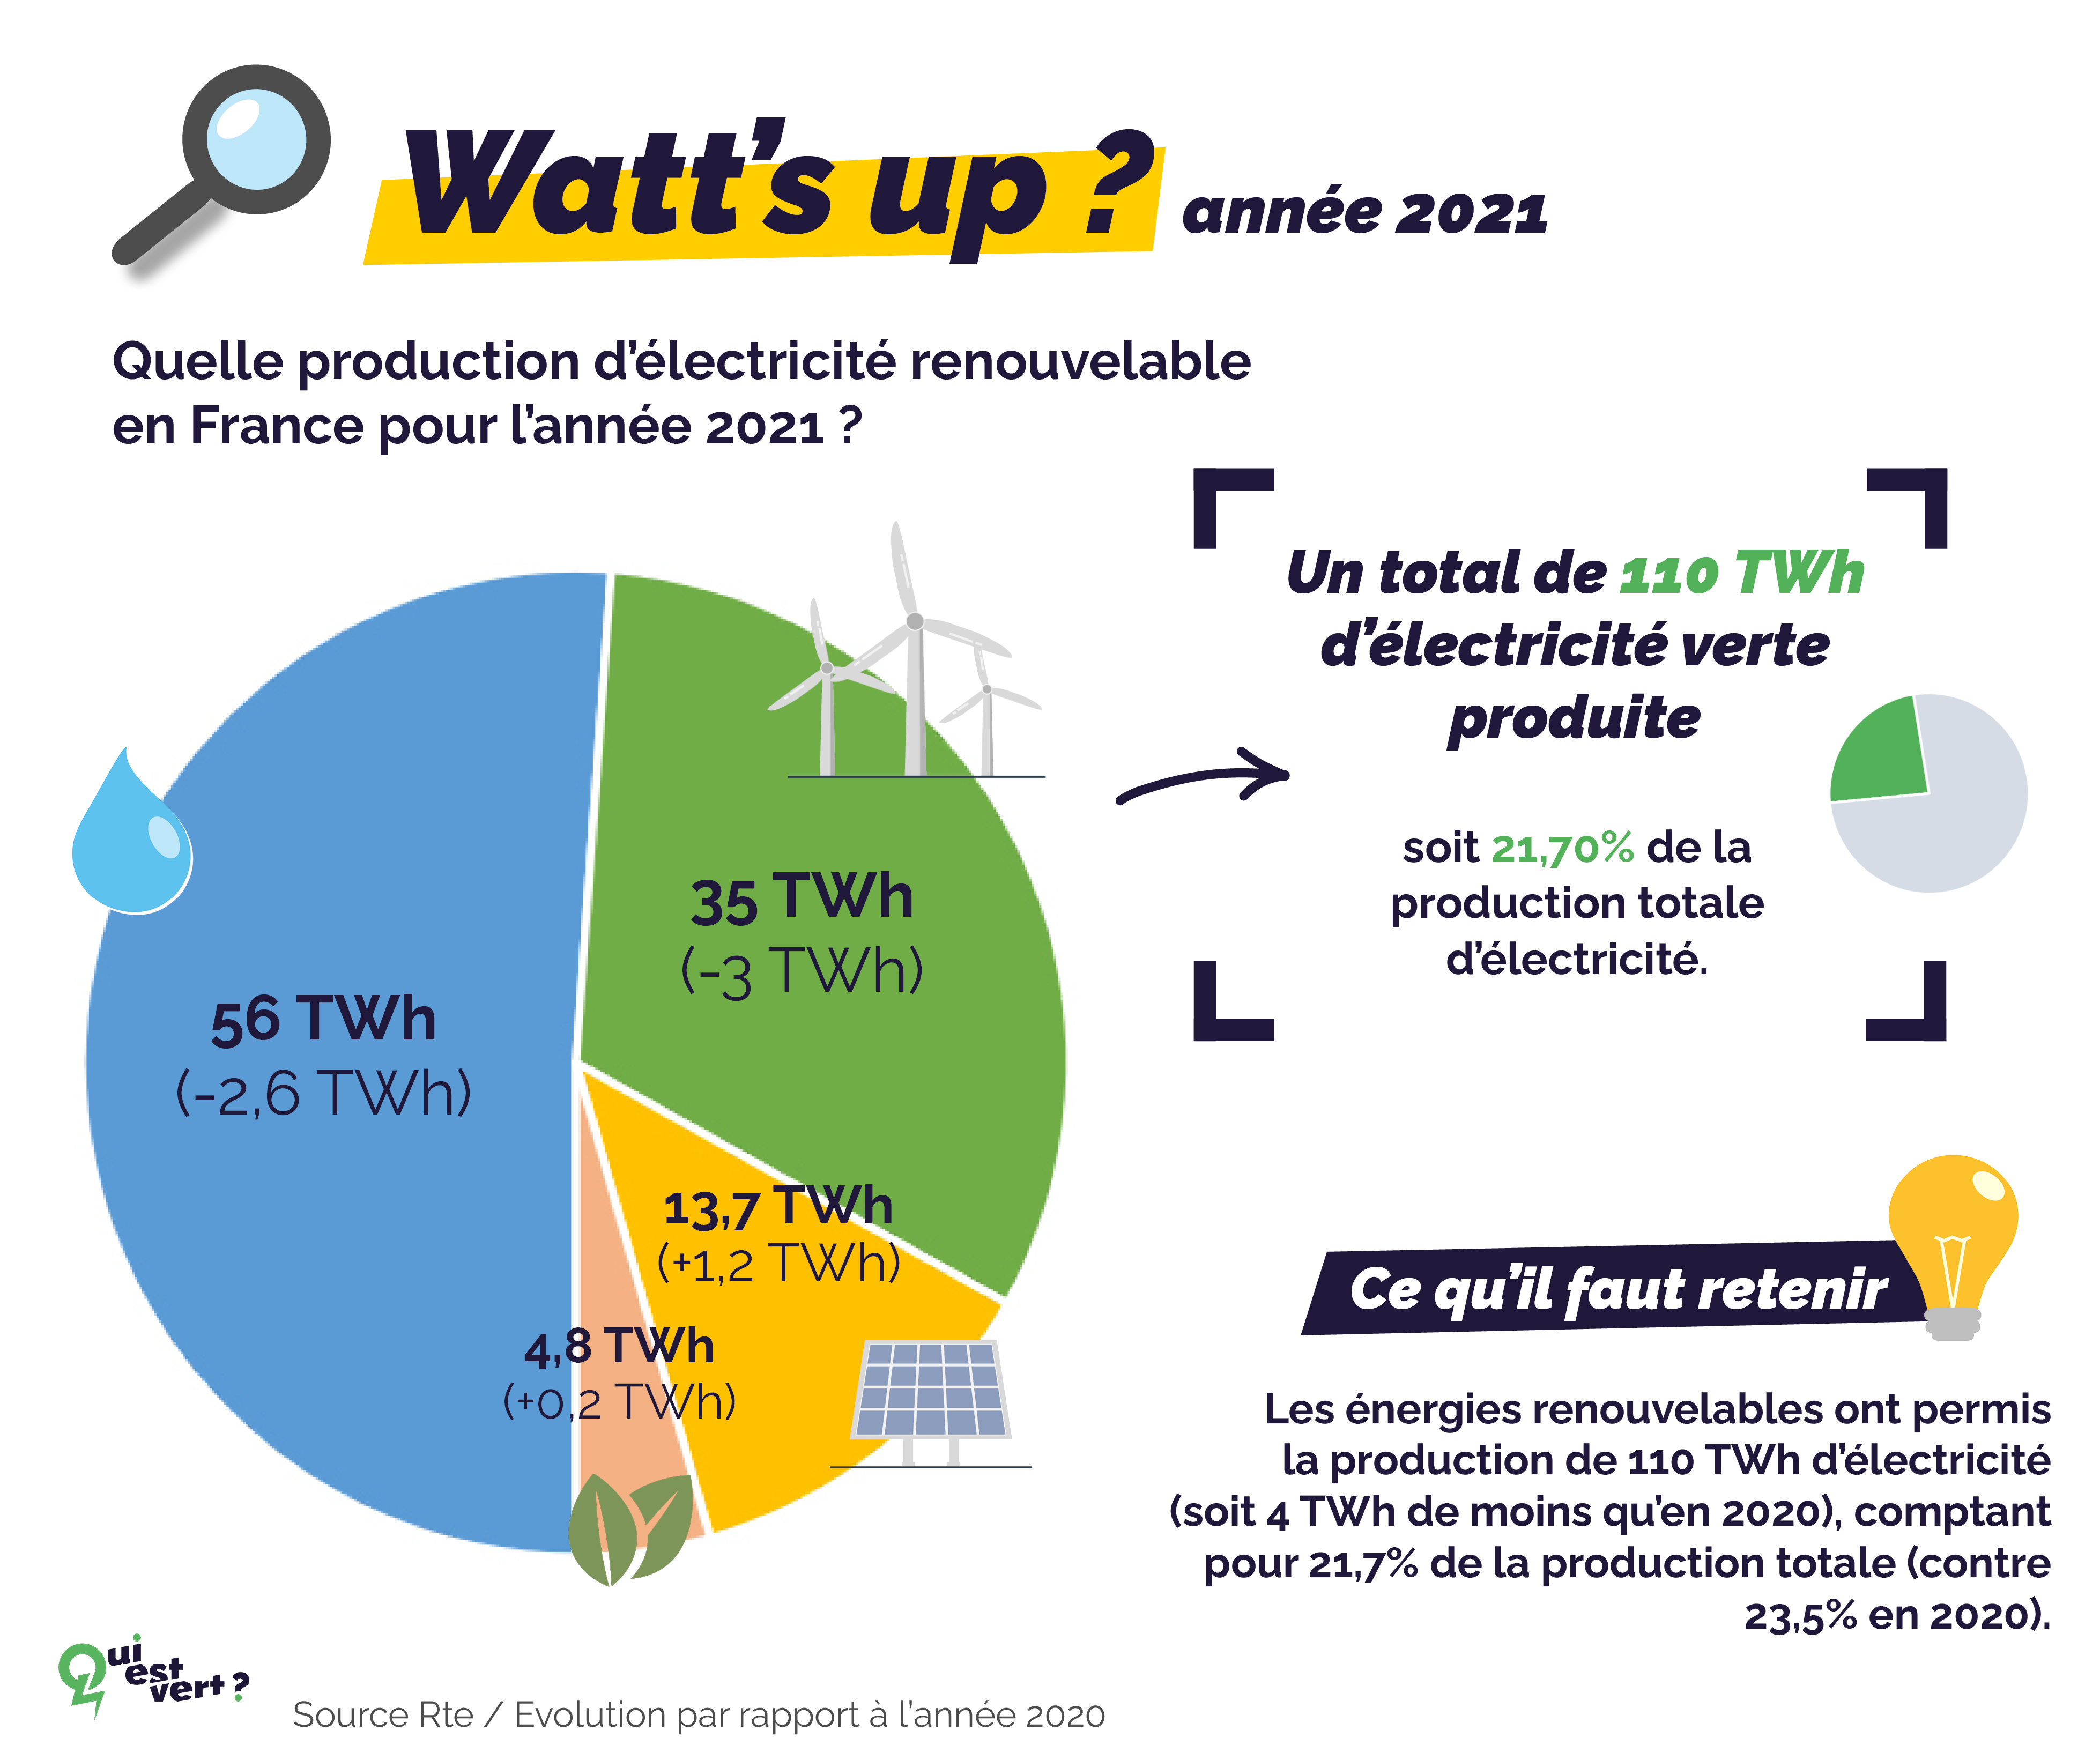 production d'électricité renouvelable par technologie en france en 2021